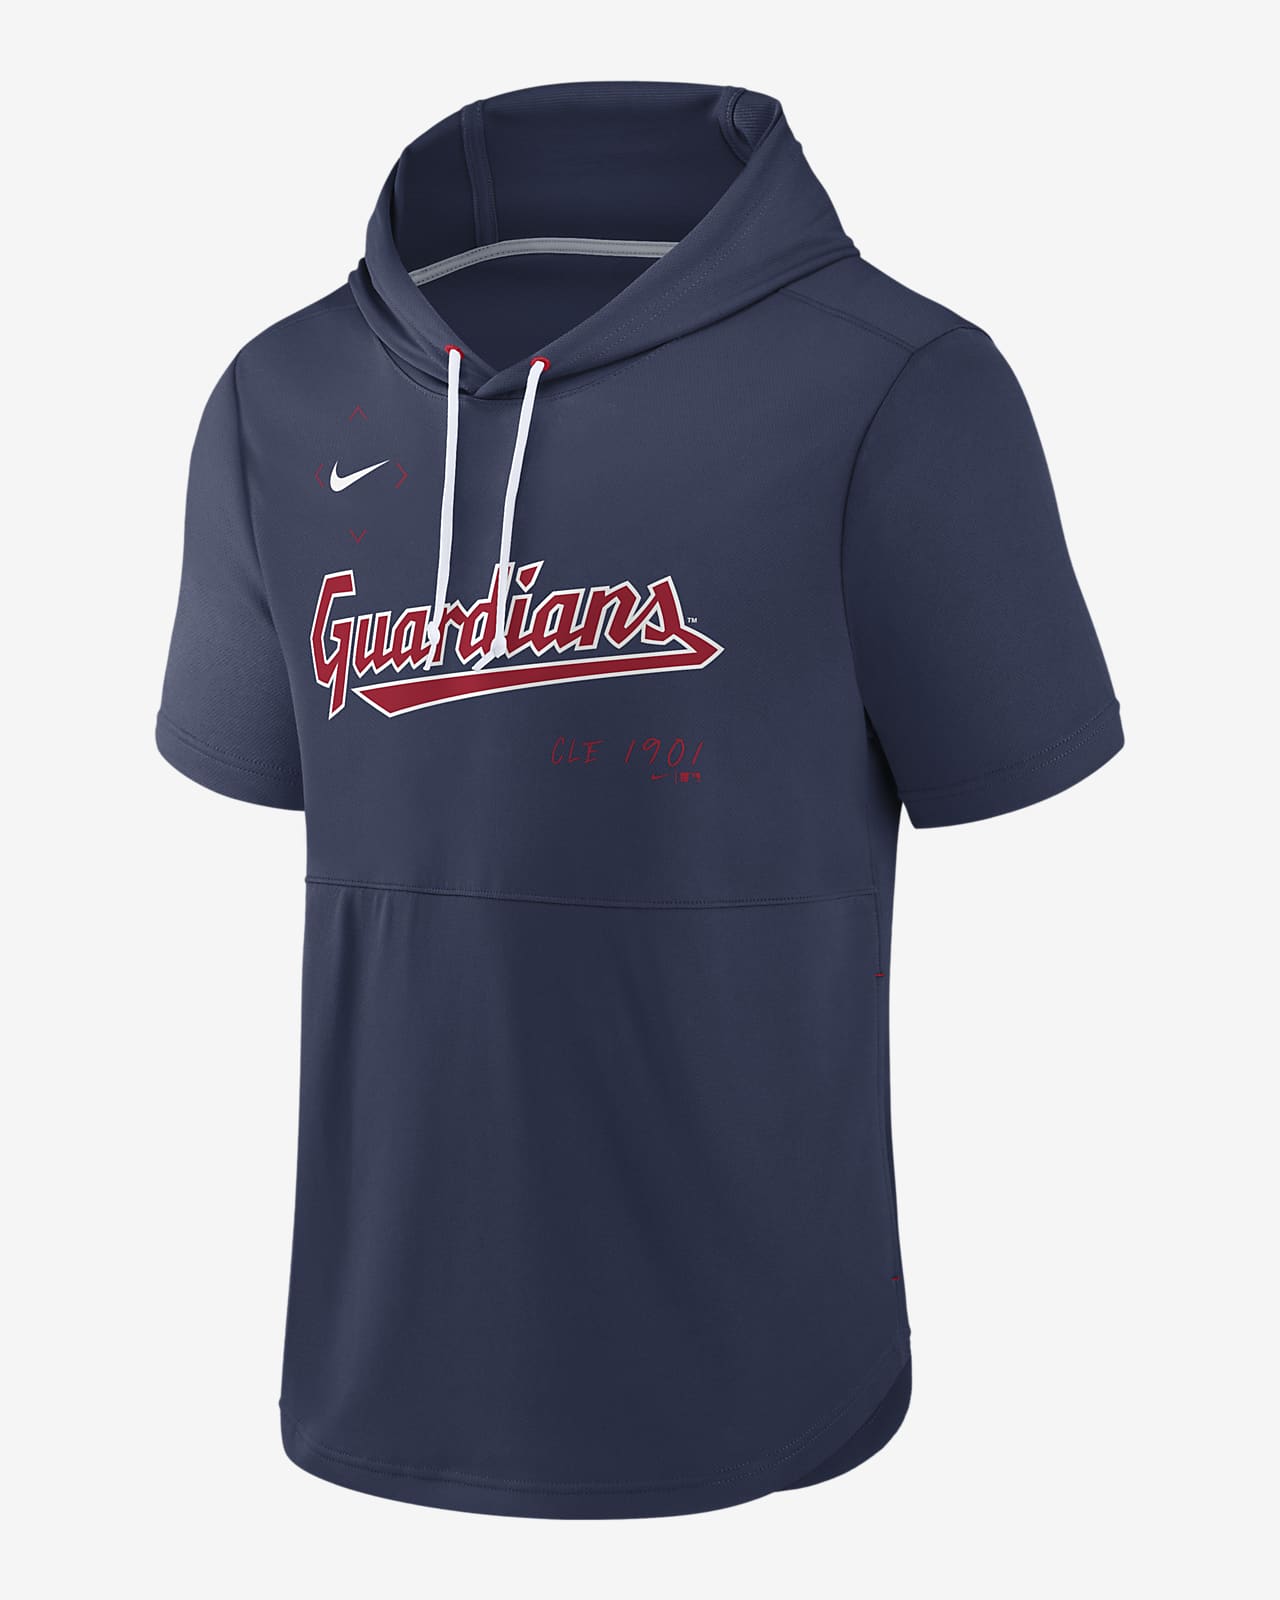 Amazoncom Cleveland Indians Sweatshirt